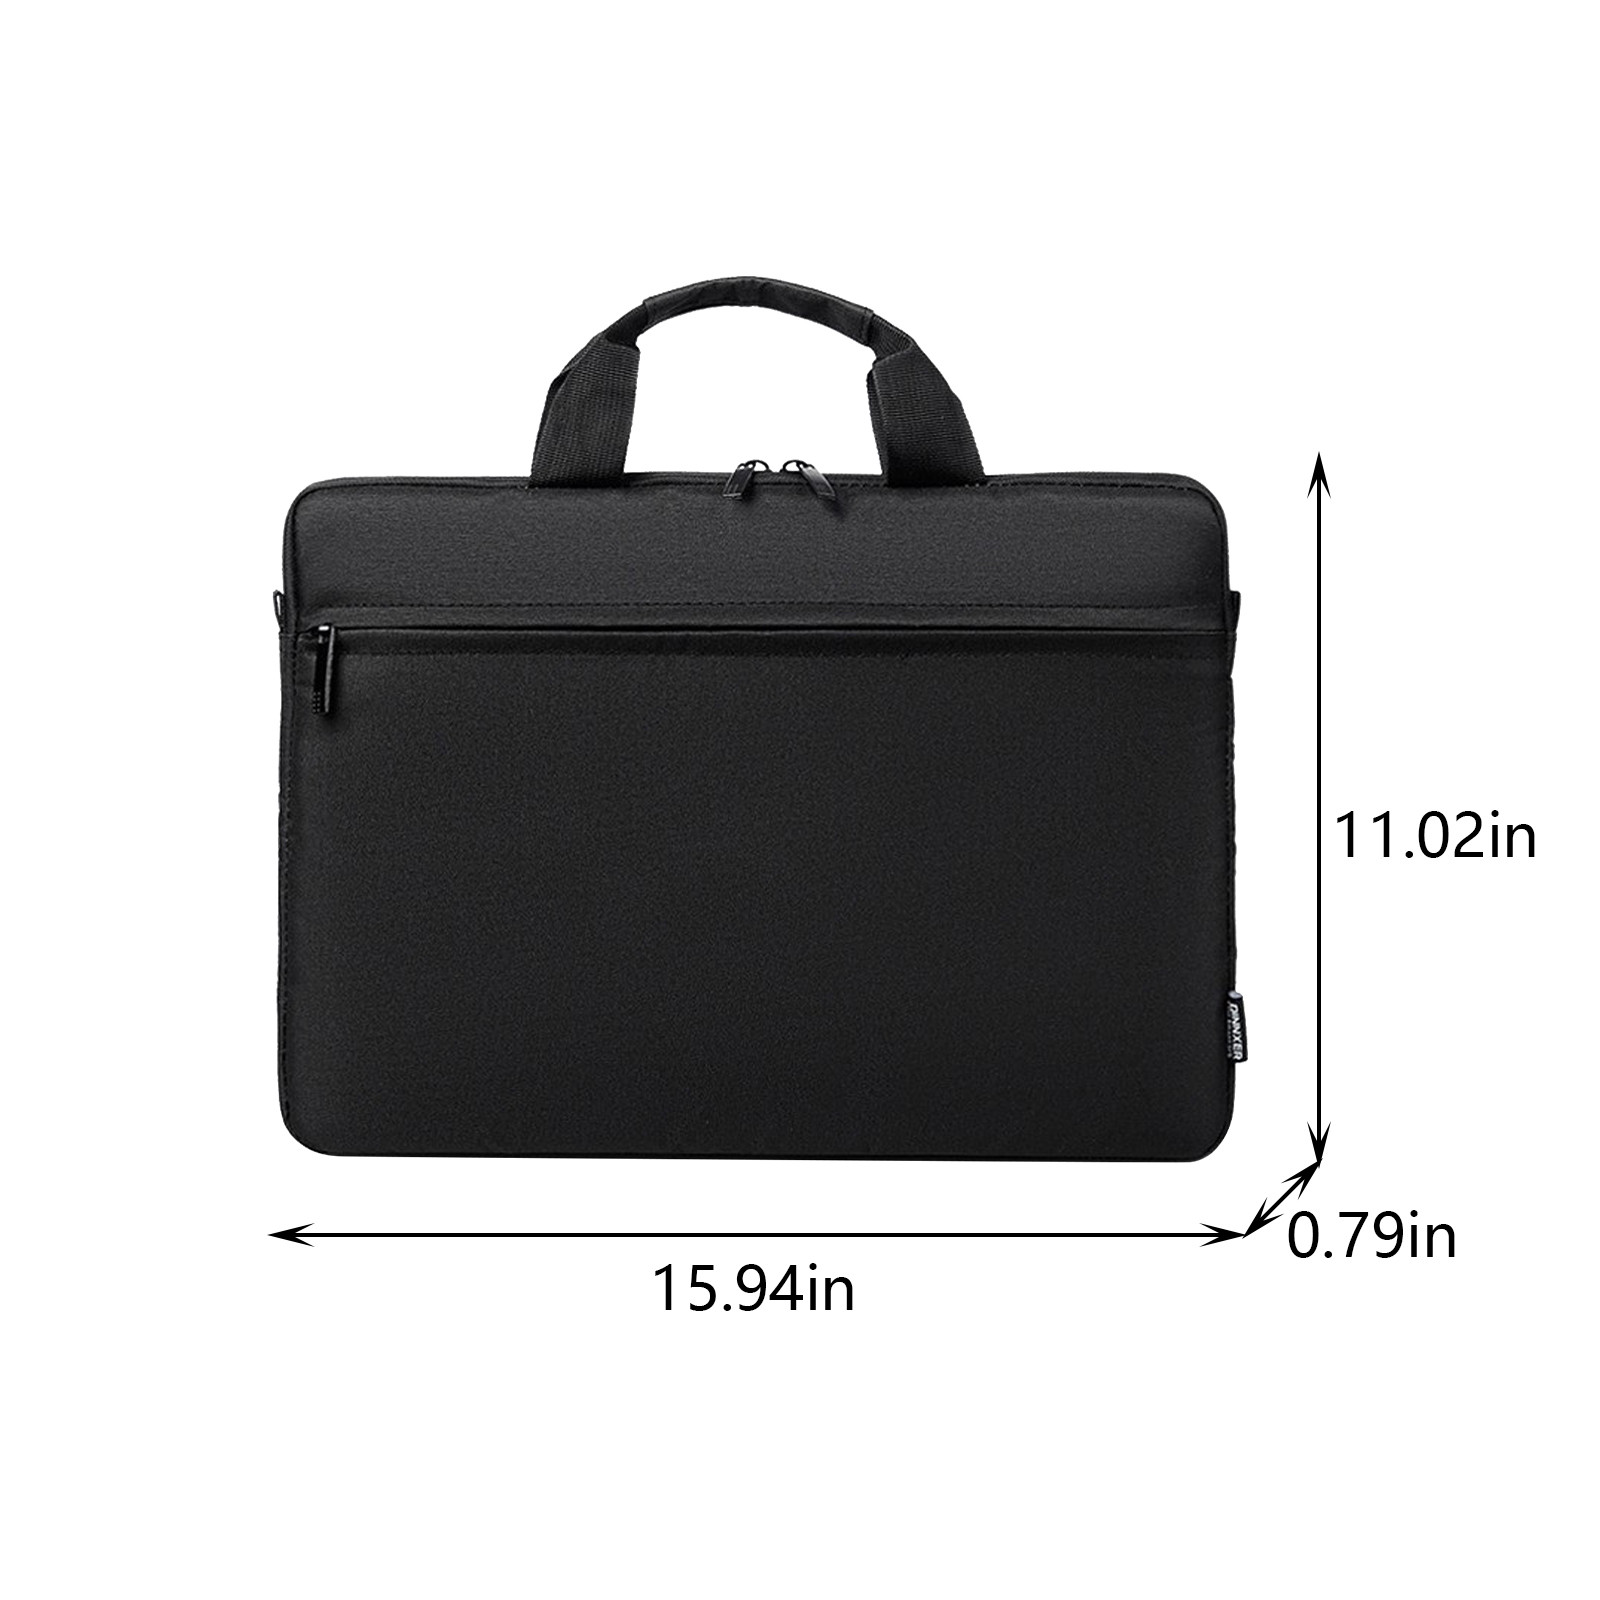 Wovilon Laptop Bag 15.6 Inch Briefcase Shoulder Bag Water Repellent Laptop Bag Satchel Tablet Bussiness Carrying Handbag Laptop Sleeve for Women and Men-Charcoal Black - image 4 of 8